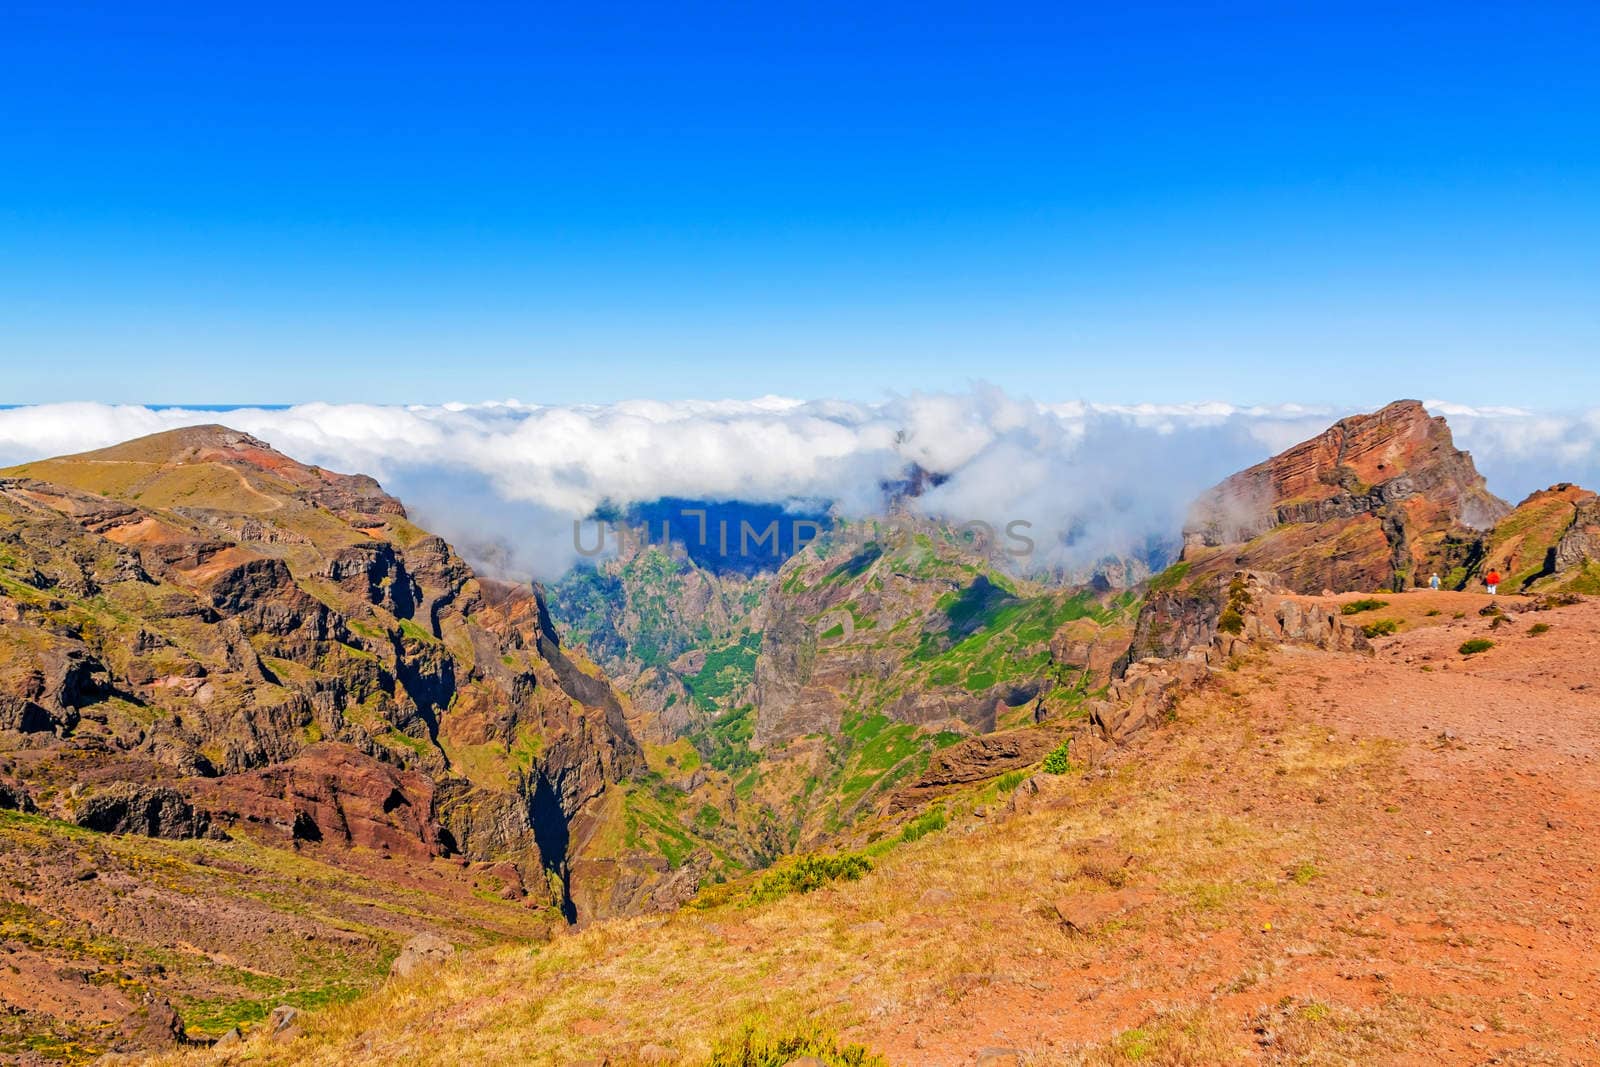 Colorful volcanic mountain landscape - Pico do Arieiro, Madeira, Portugal